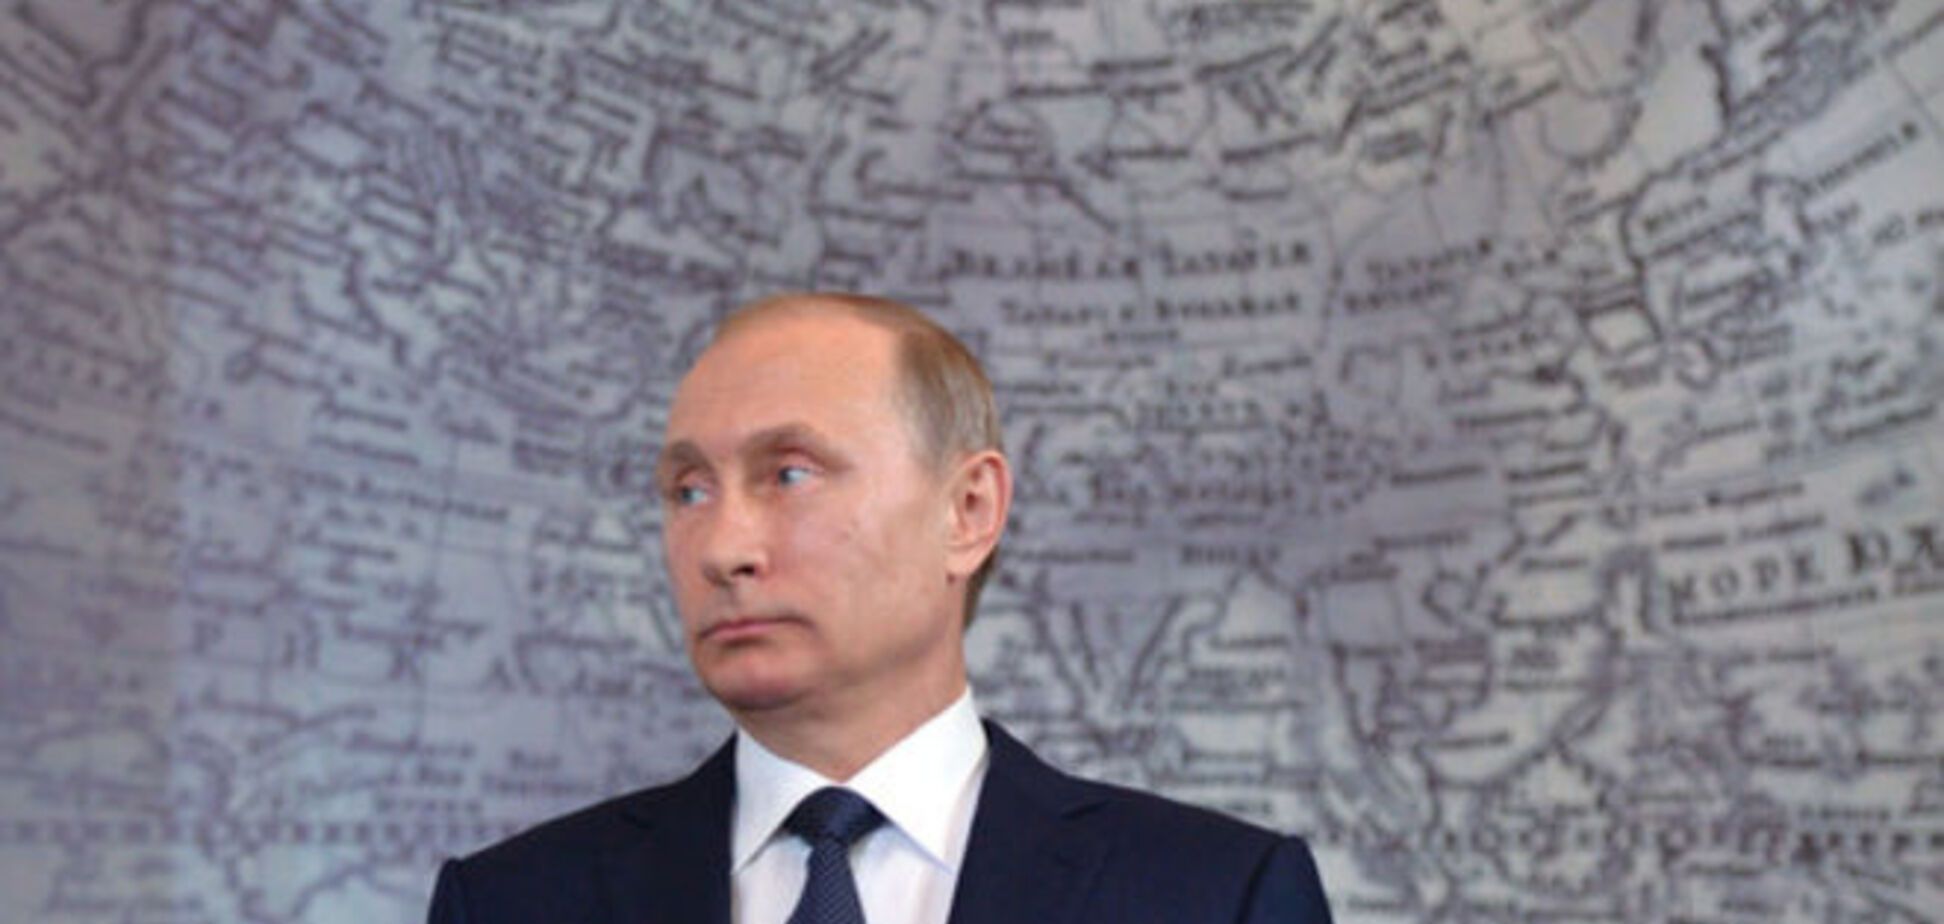 Генерал Гречанинов: Путин строит азиатскую империю